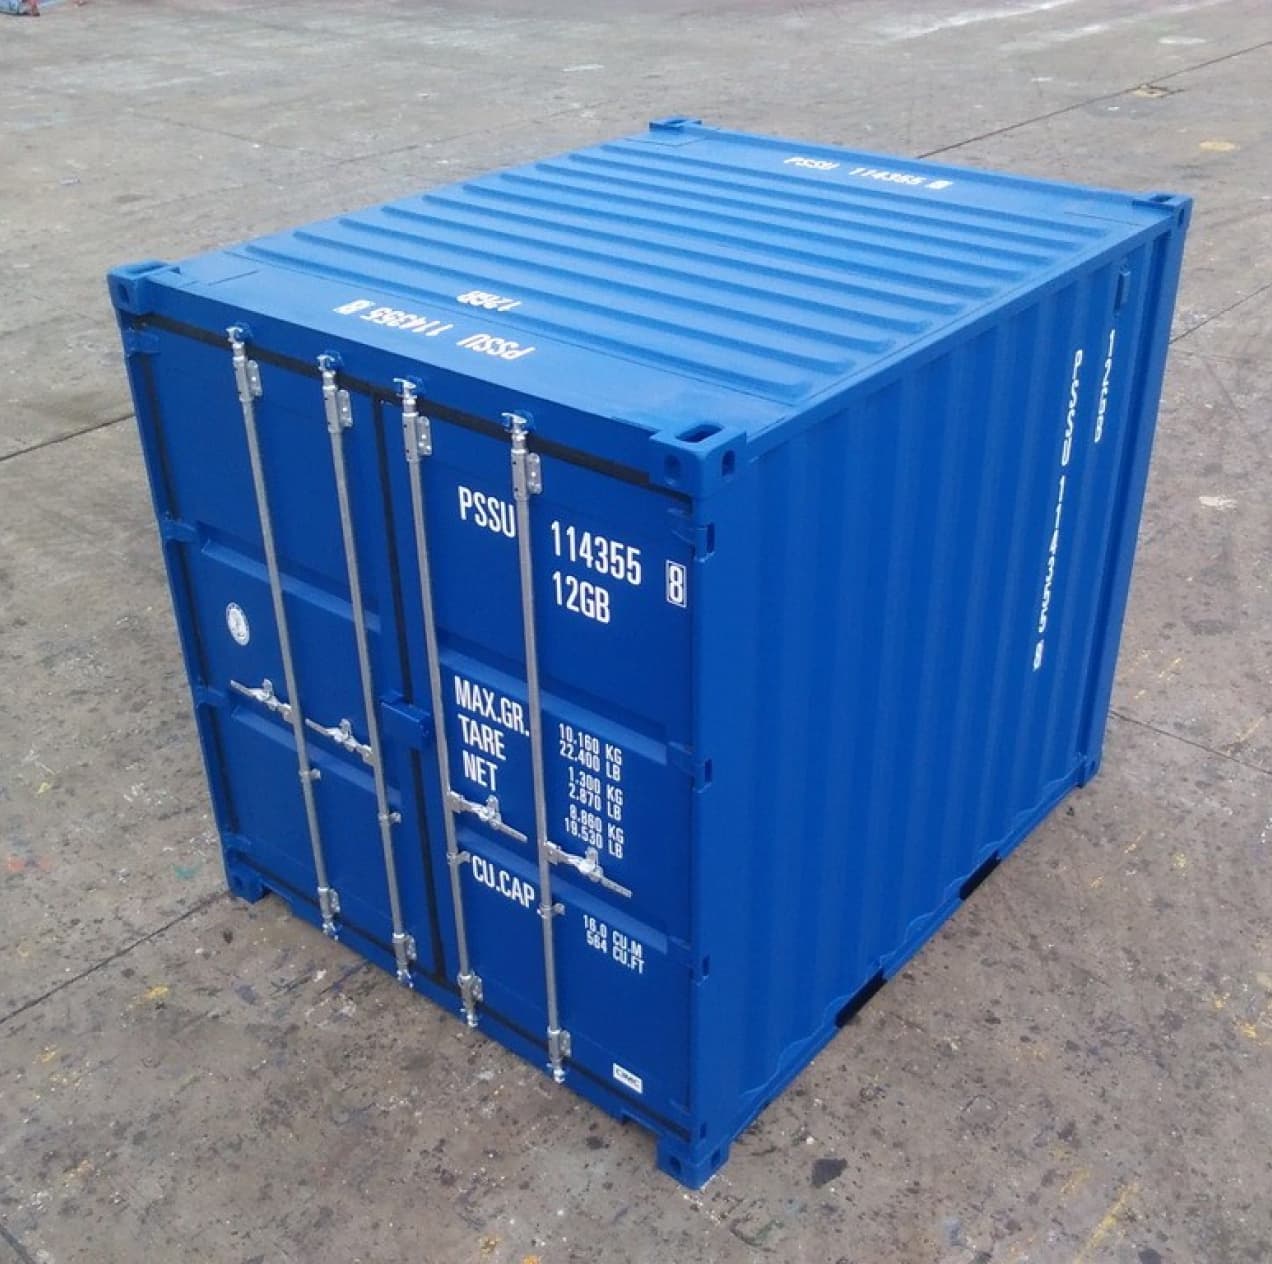 10' Newbuild Blue Container